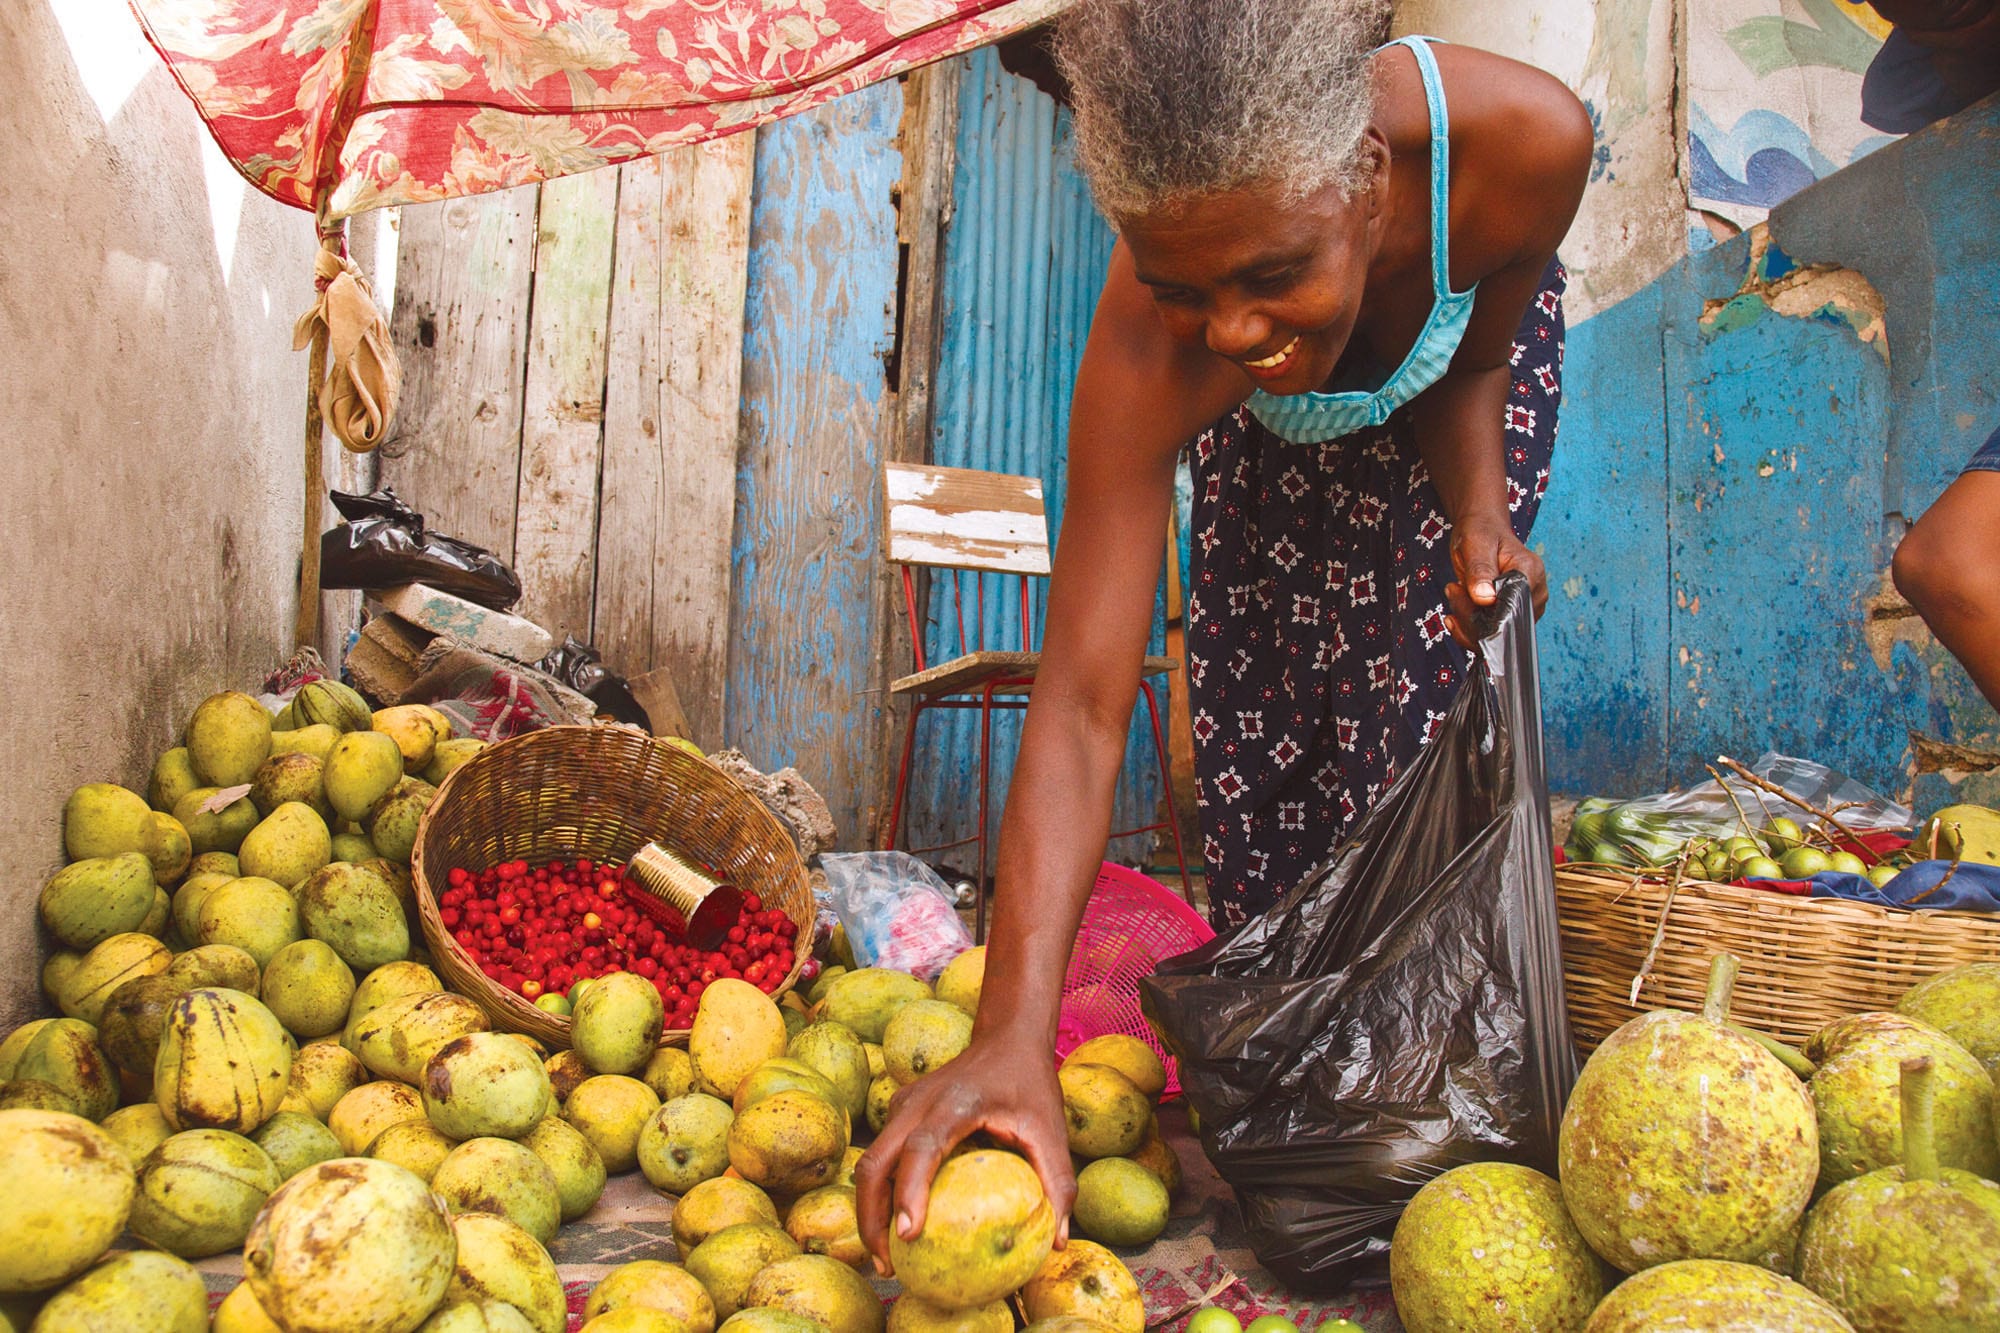 A woman sells mangoes in Haiti